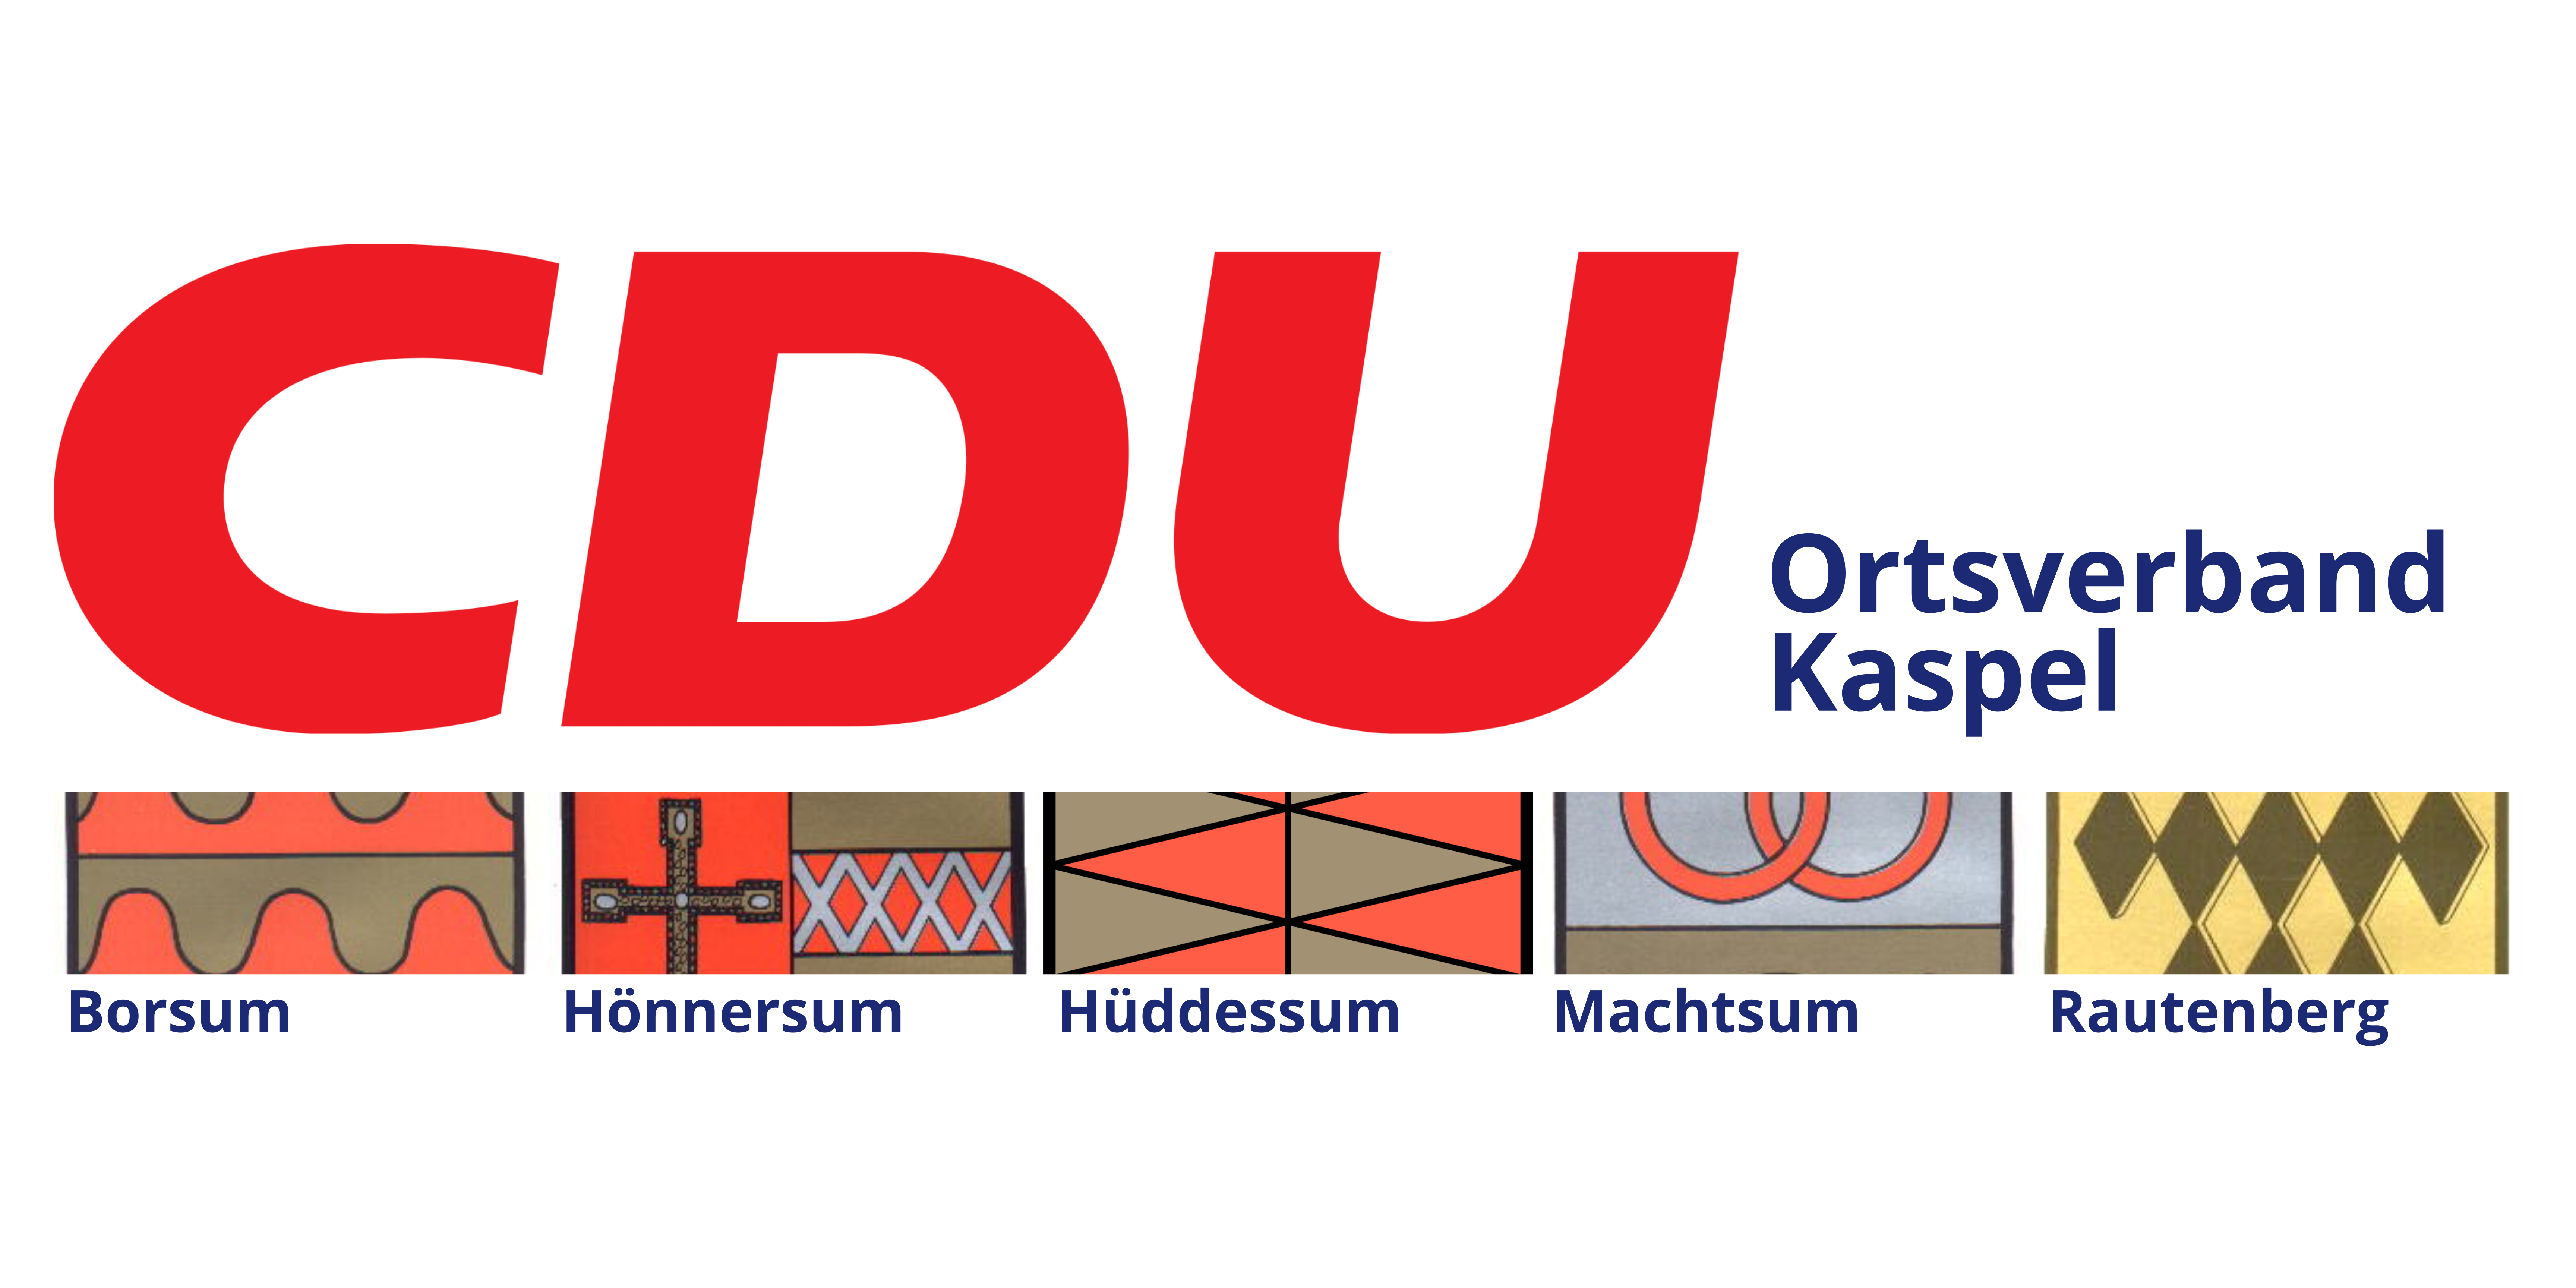 CDU Ortsverband Kaspel